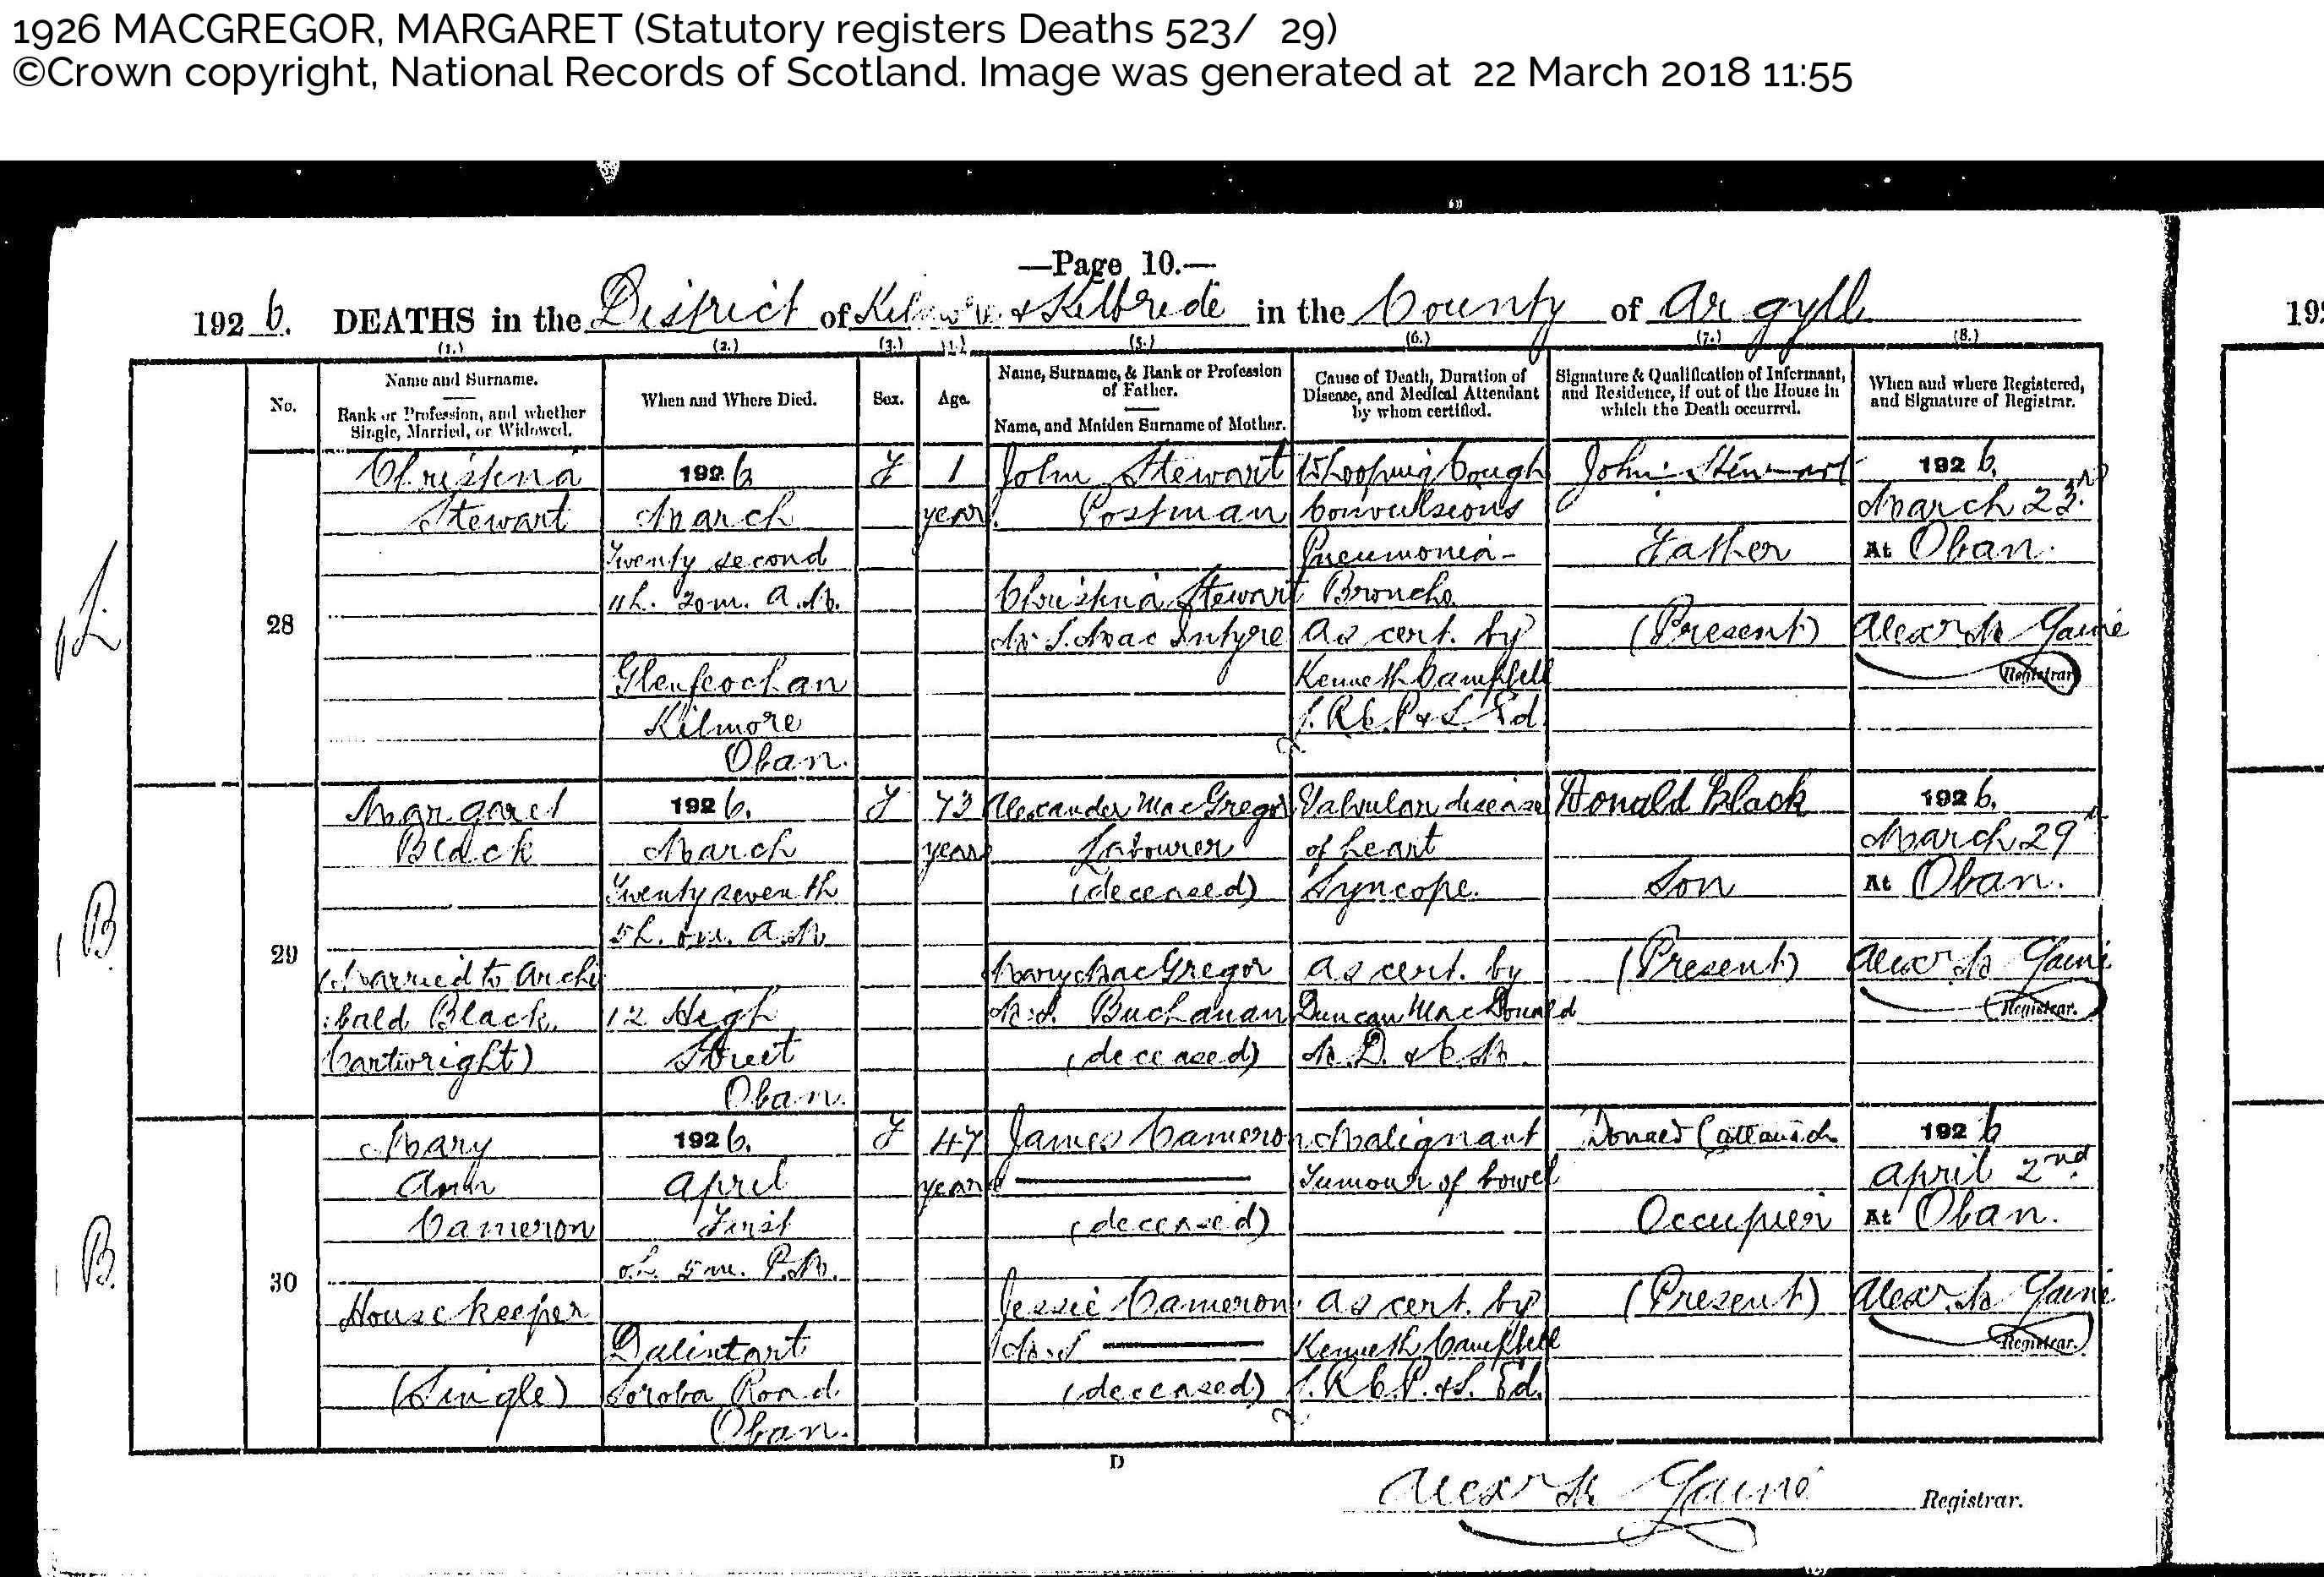 MargaretMcGregor(Black)_D1926 Oban Argyll, April 1, 1926, Linked To: <a href='profiles/i678.html' >Archibald Black</a> and <a href='profiles/i673.html' >Margaret `Peggy` Macgregor</a> and <a href='profiles/i651.html' >Mary Buchanan ~</a> and <a href='profiles/i650.html' >Alexander MacGregor ~</a>